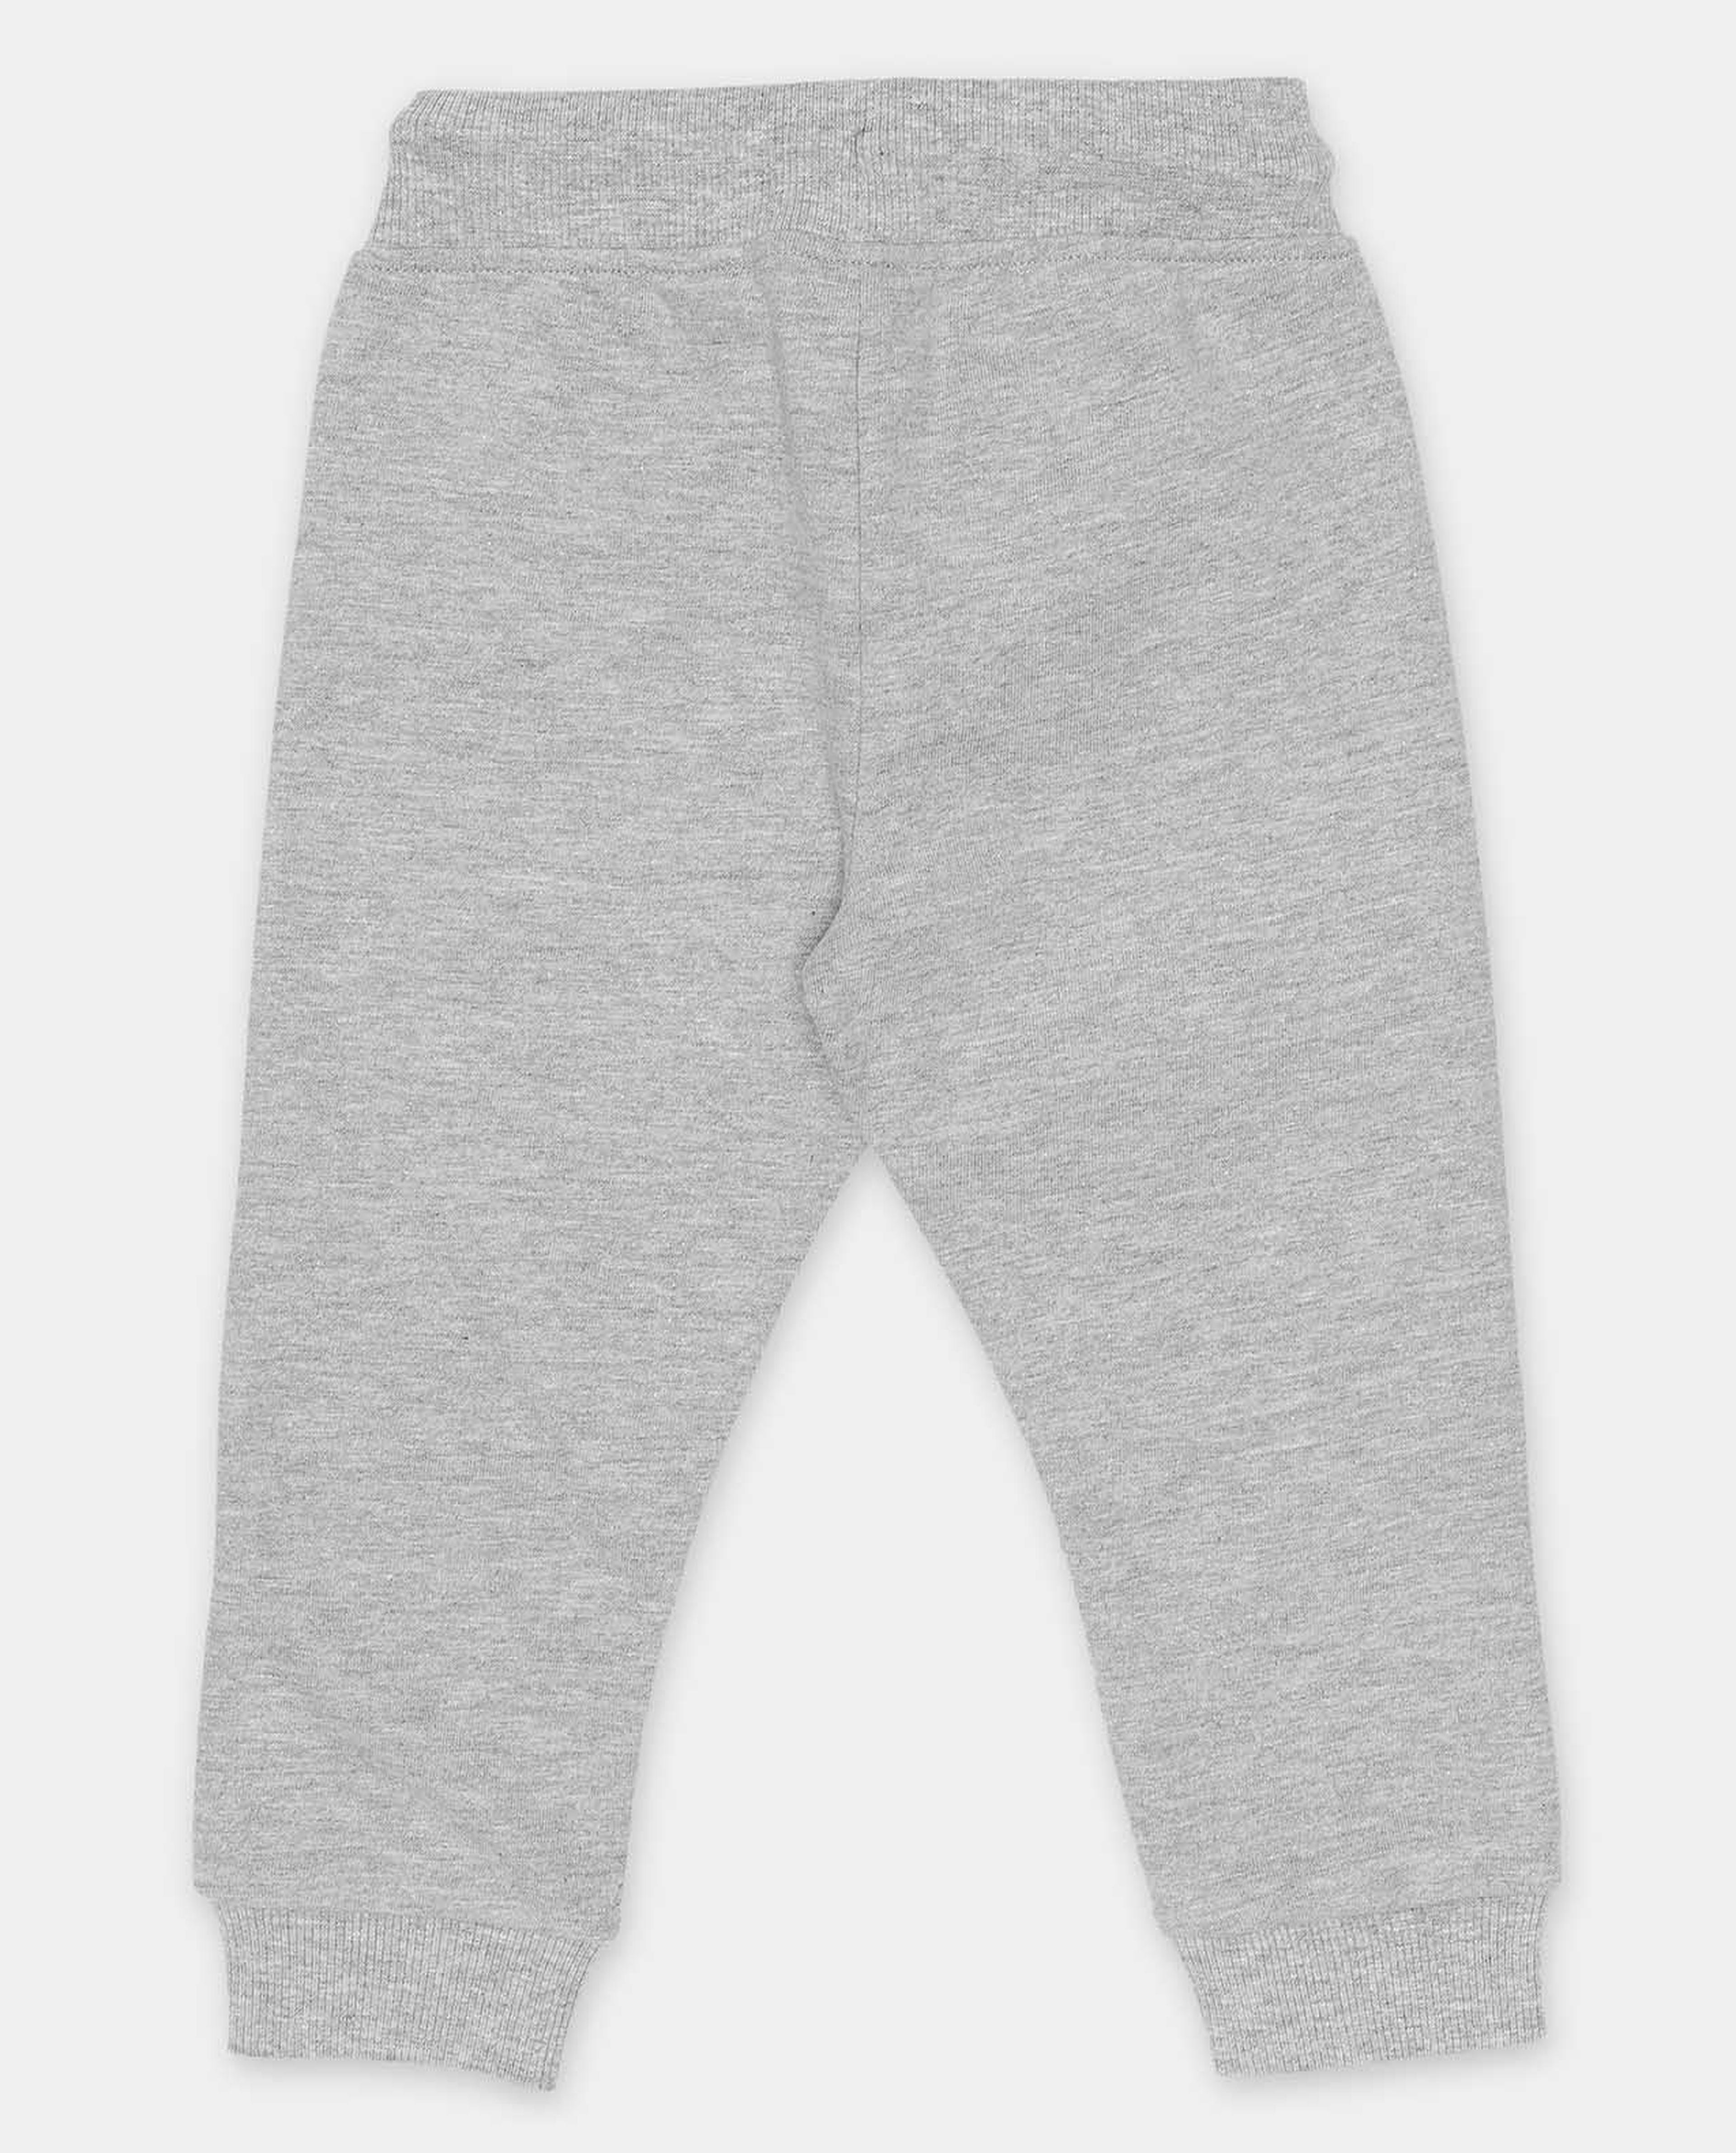 Grey Printed Regular Fit Joggers